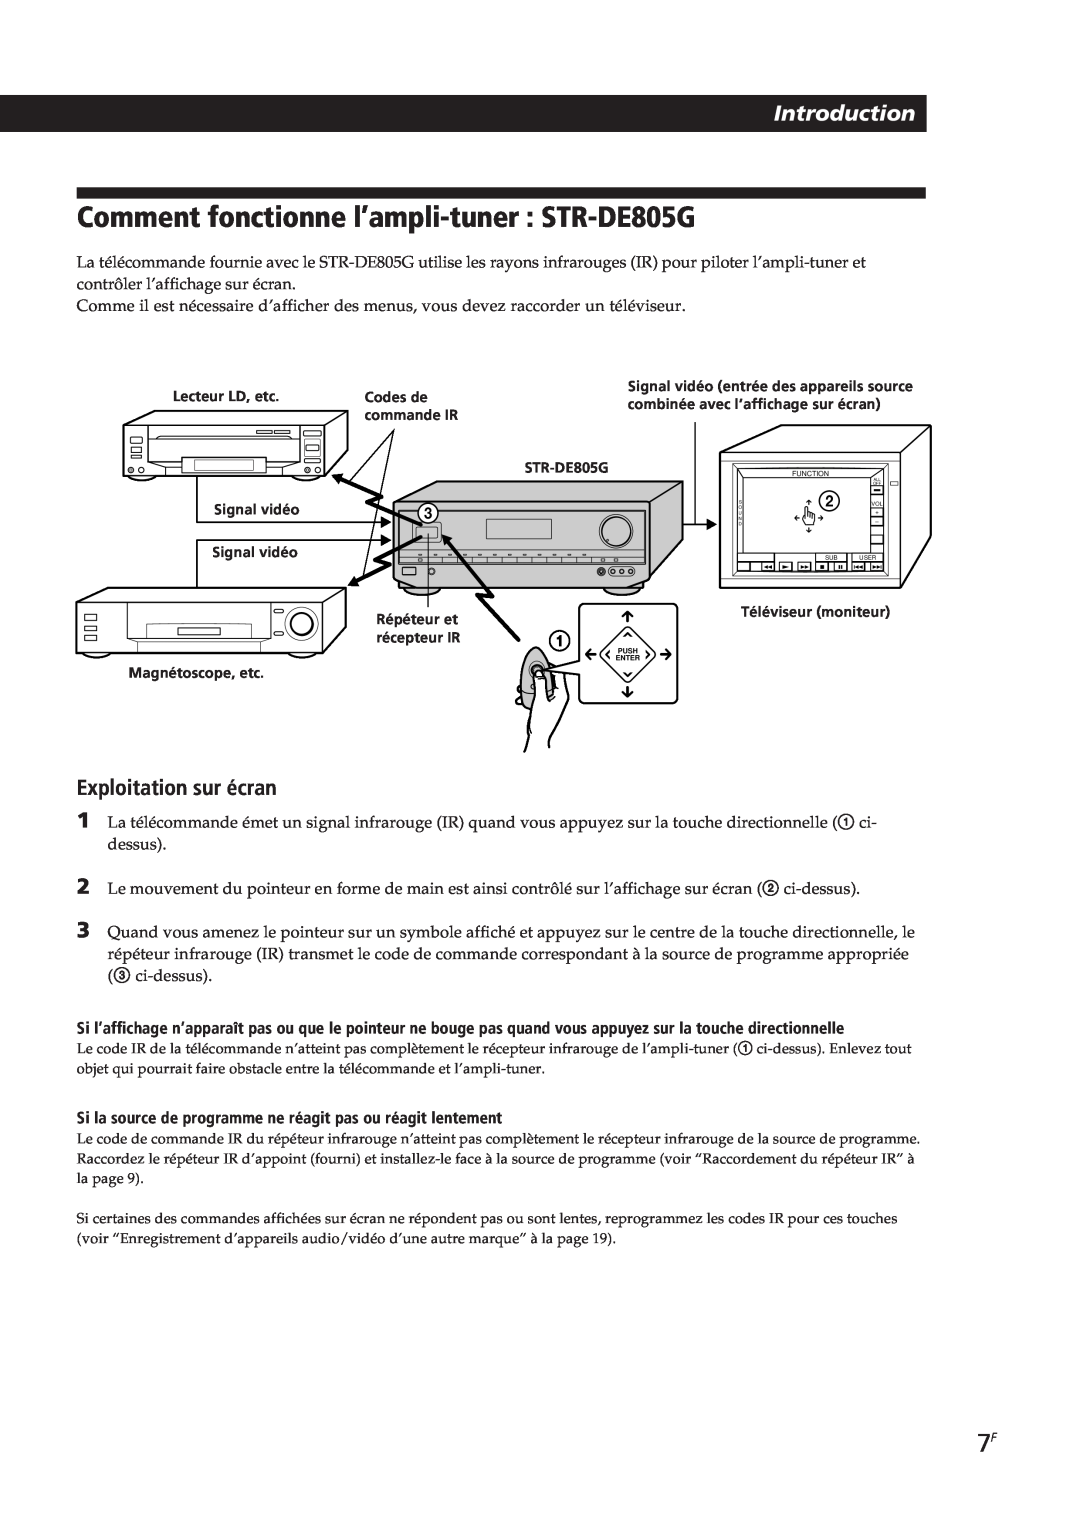 Sony STR-DE905G, STR-DE805G manual Comment fonctionne l’ampli-tuner : STR-DE805G, Introduction, Exploitation sur écran 